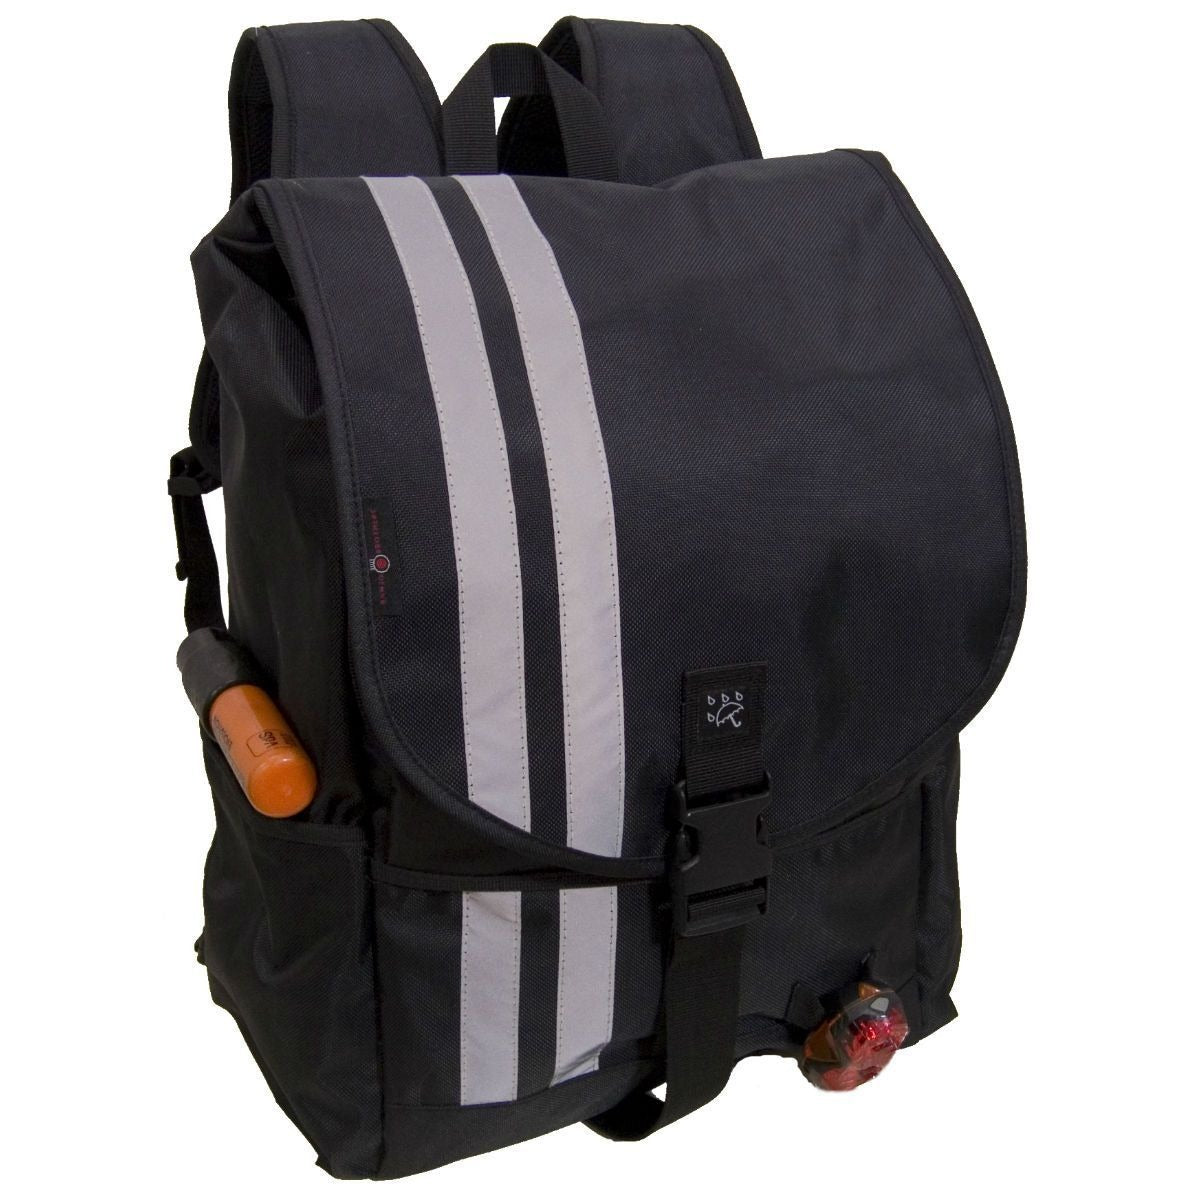 waterproof commuting backpack